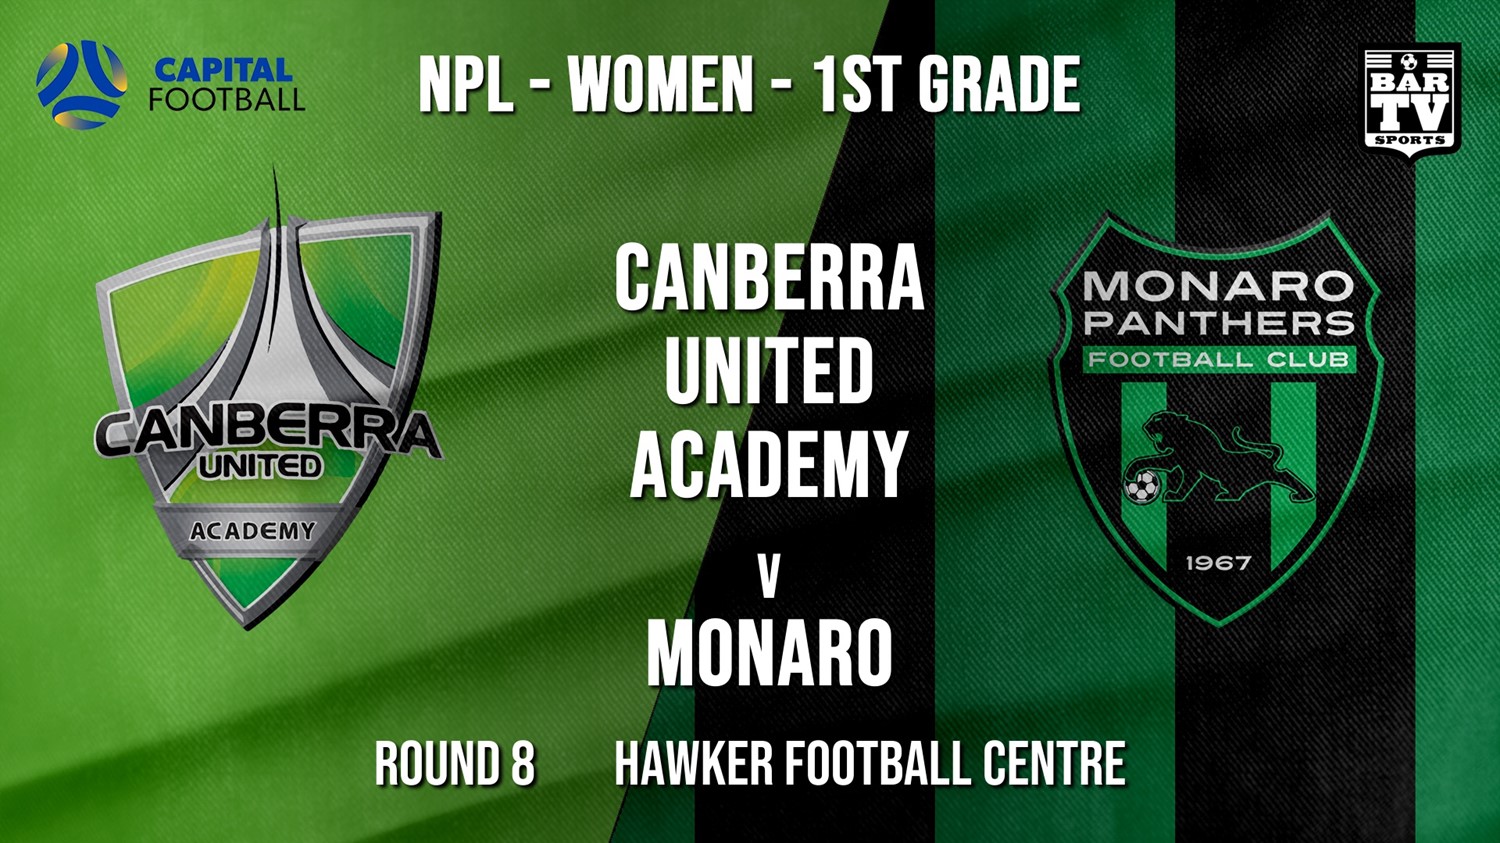 NPLW - Capital Round 8 - Canberra United Academy v Monaro Panthers FC (women) Slate Image